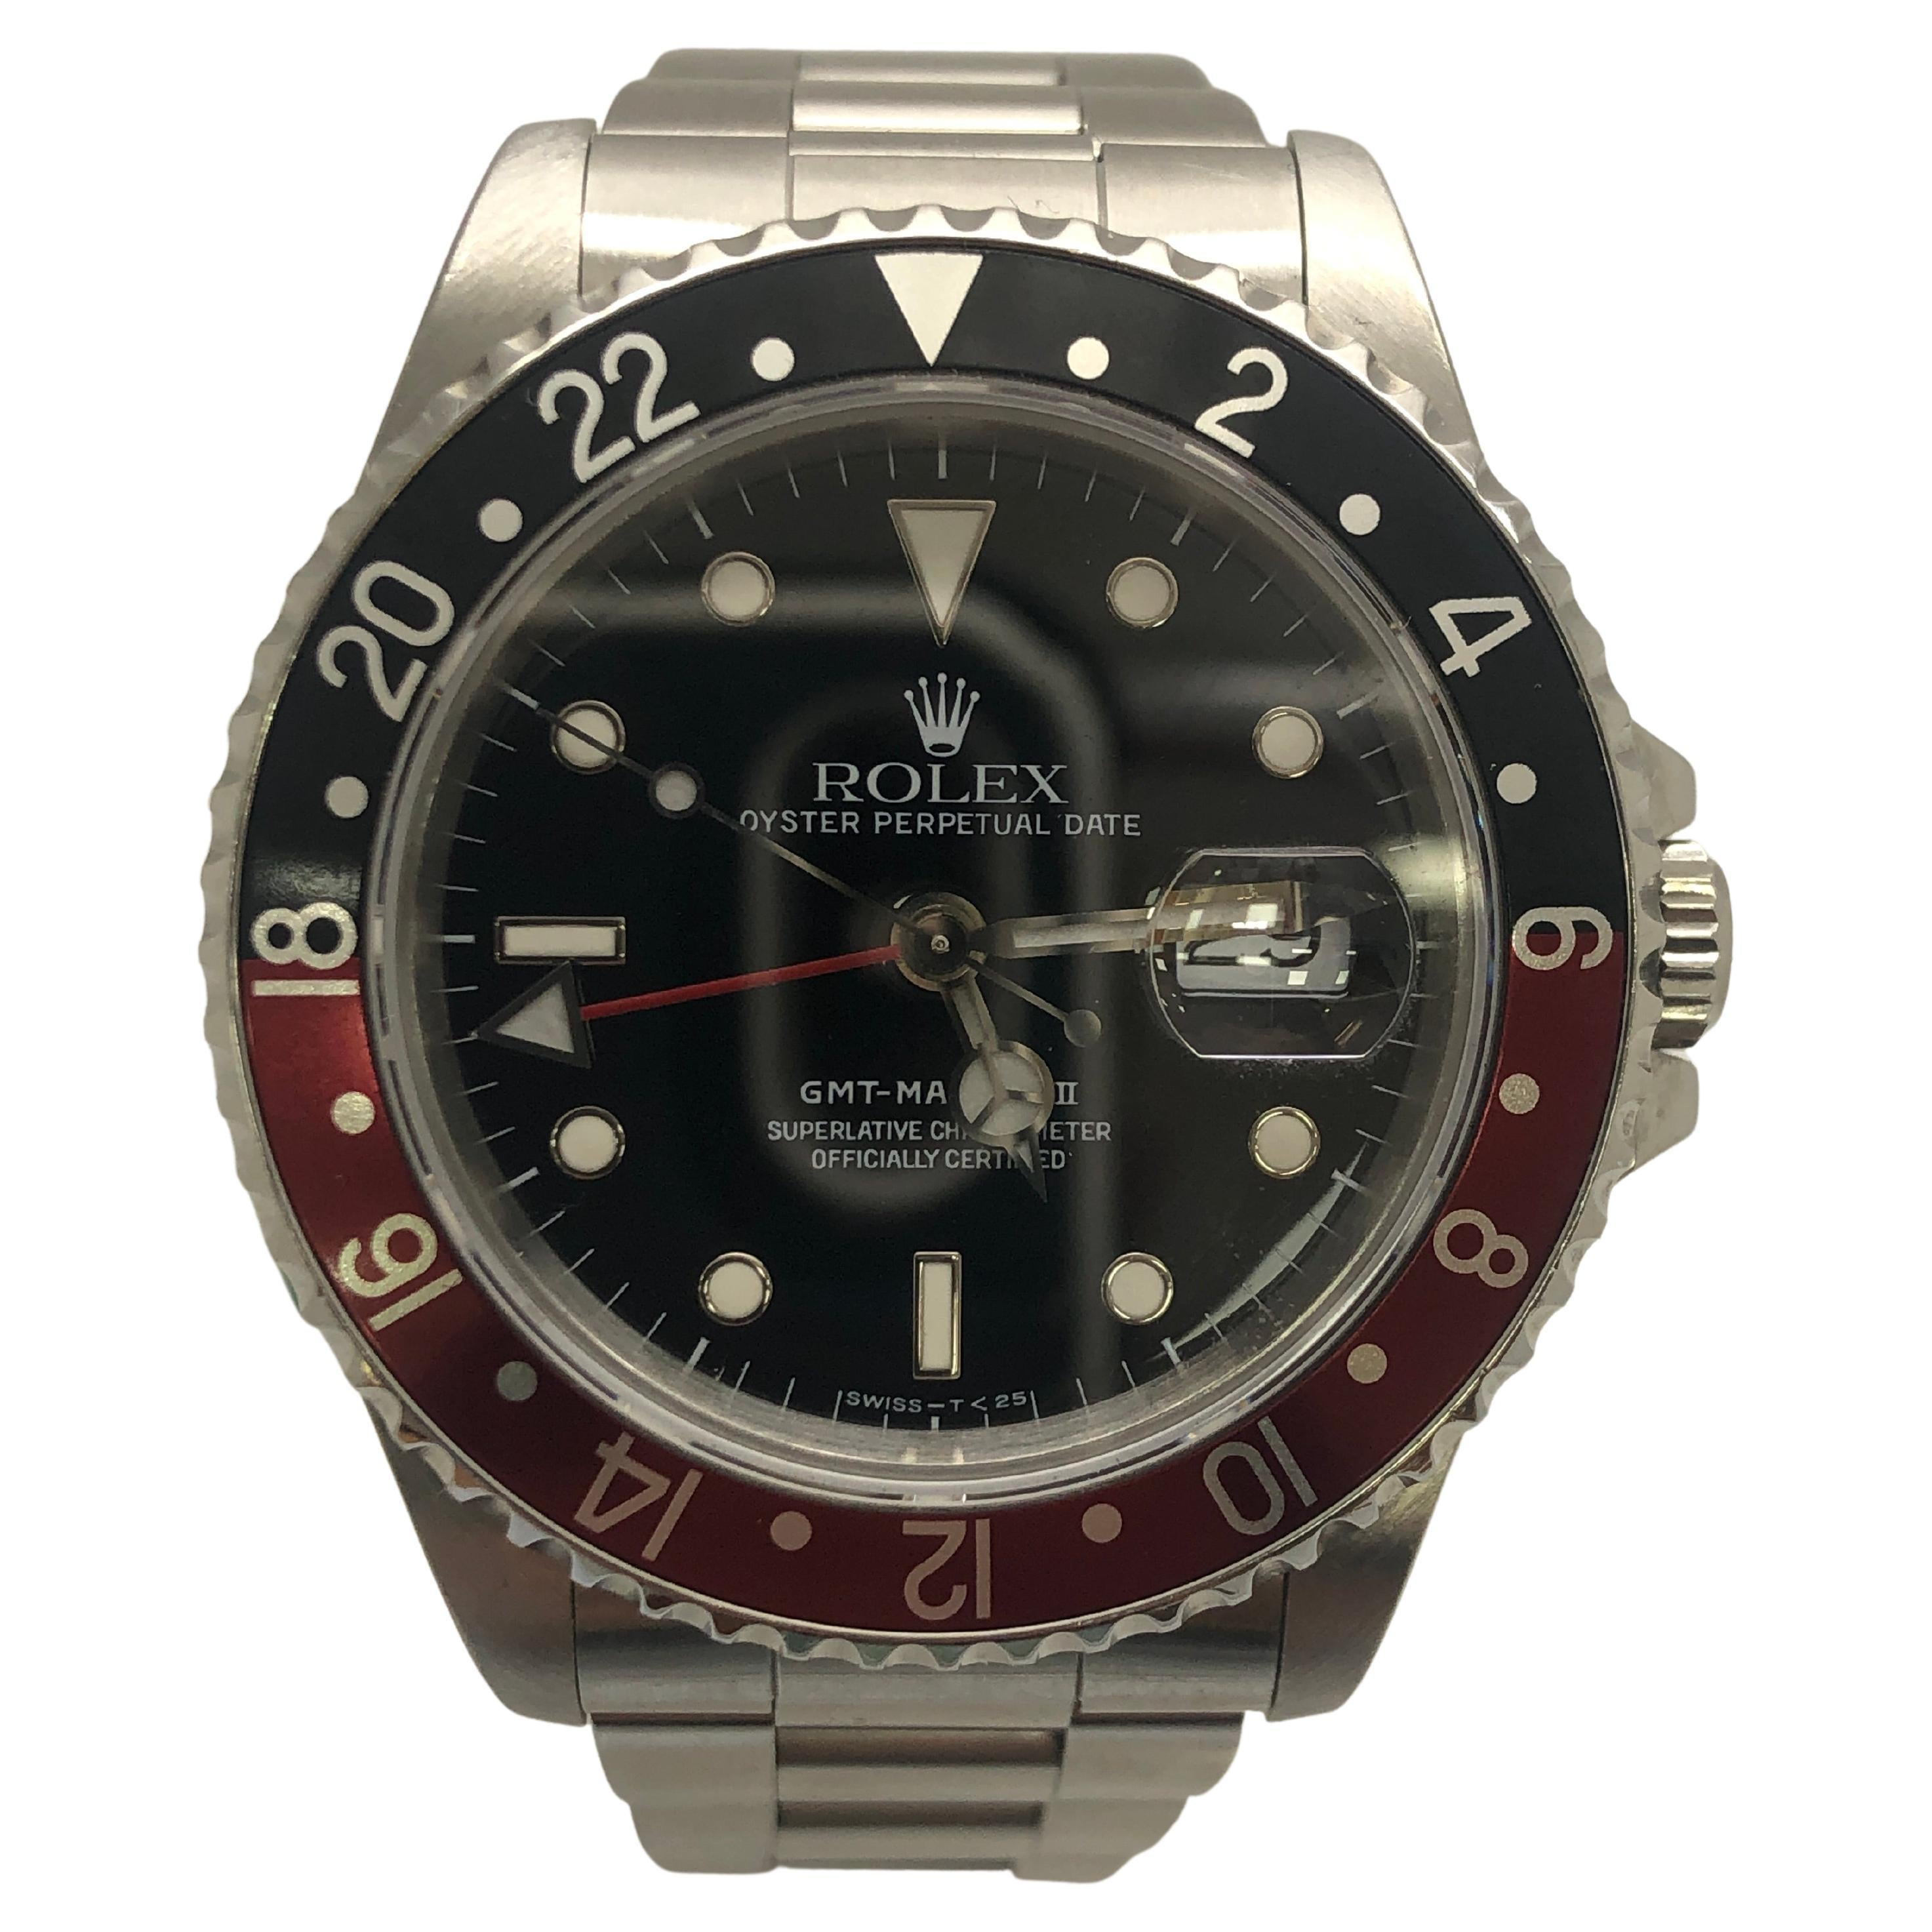 Montre Rolex GMT-Master II pour homme, noire avec lunette rouge/noire, 16710